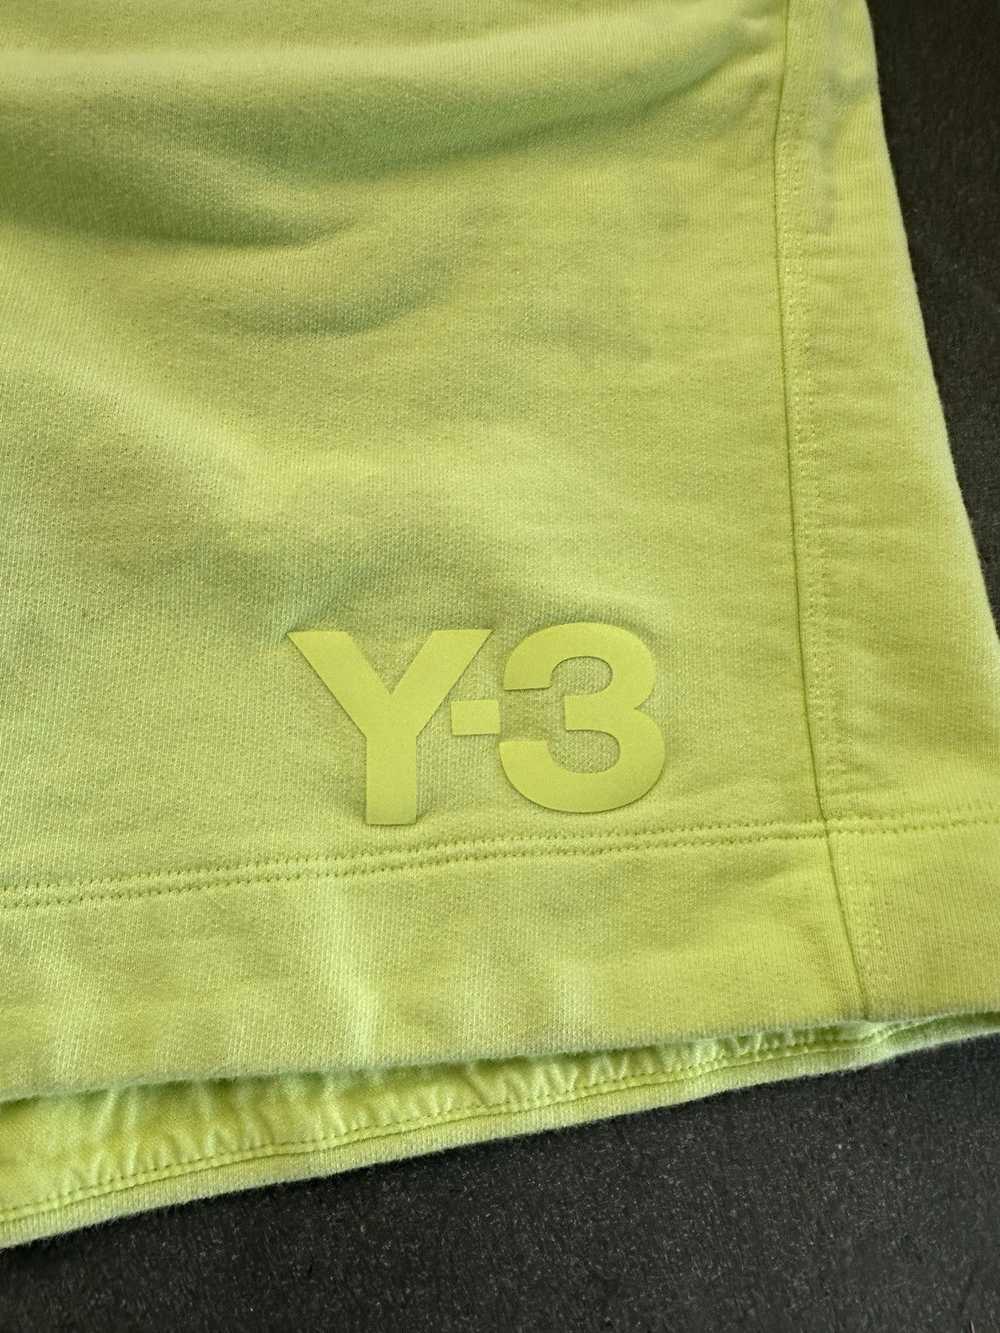 Y-3 Y-3 Logo Sweat Shorts - image 3